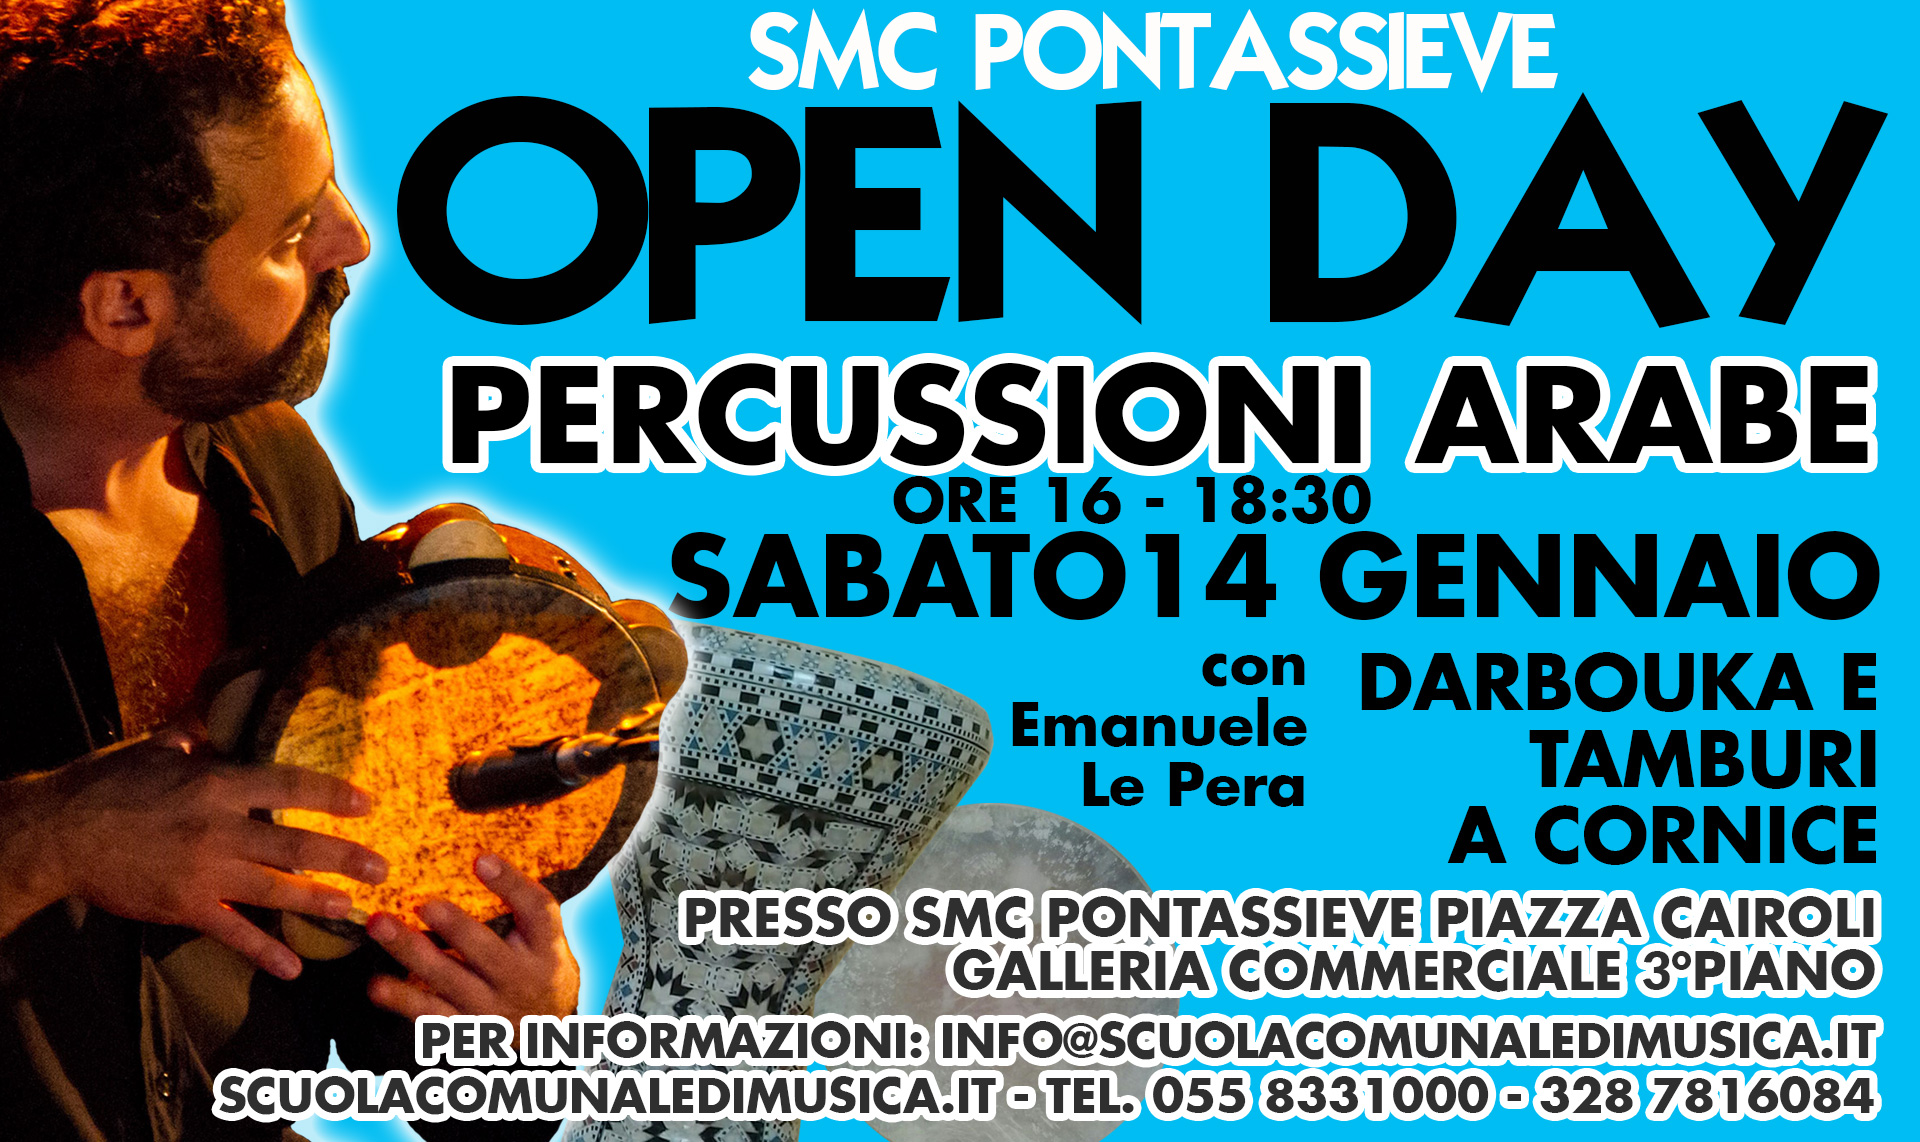 Open Day di Percussioni Arabe Sabato 14 Gennaio ore 16